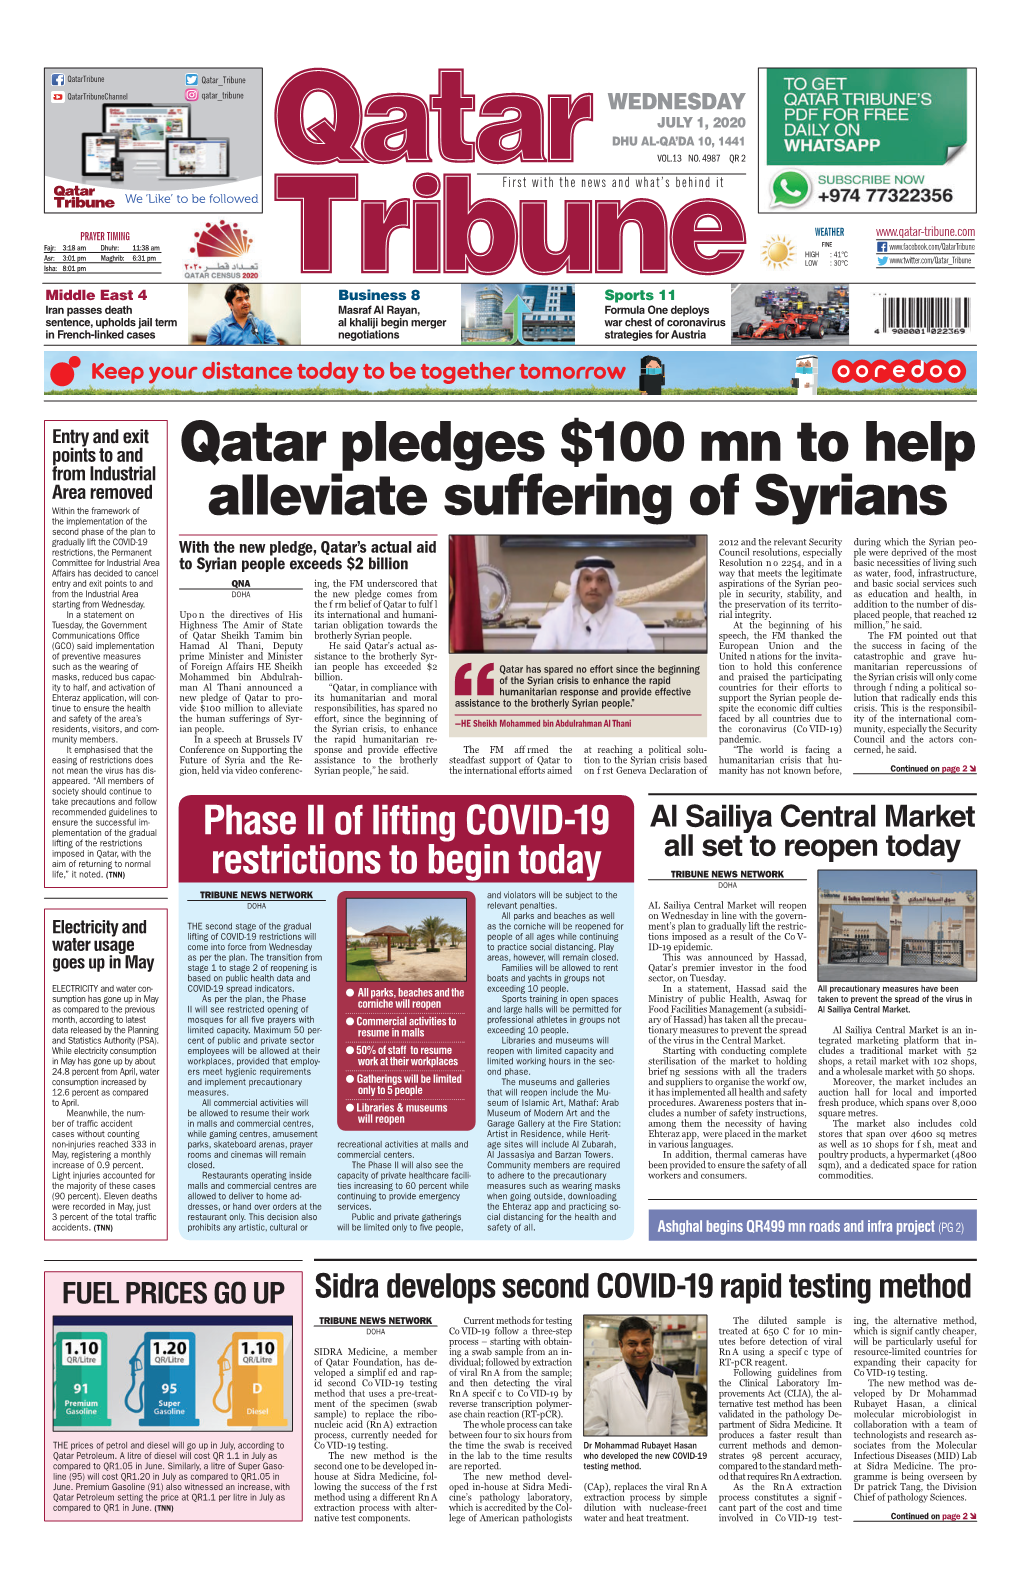 Qatar Pledges $100 Mn to Help Alleviate Suffering of Syrians